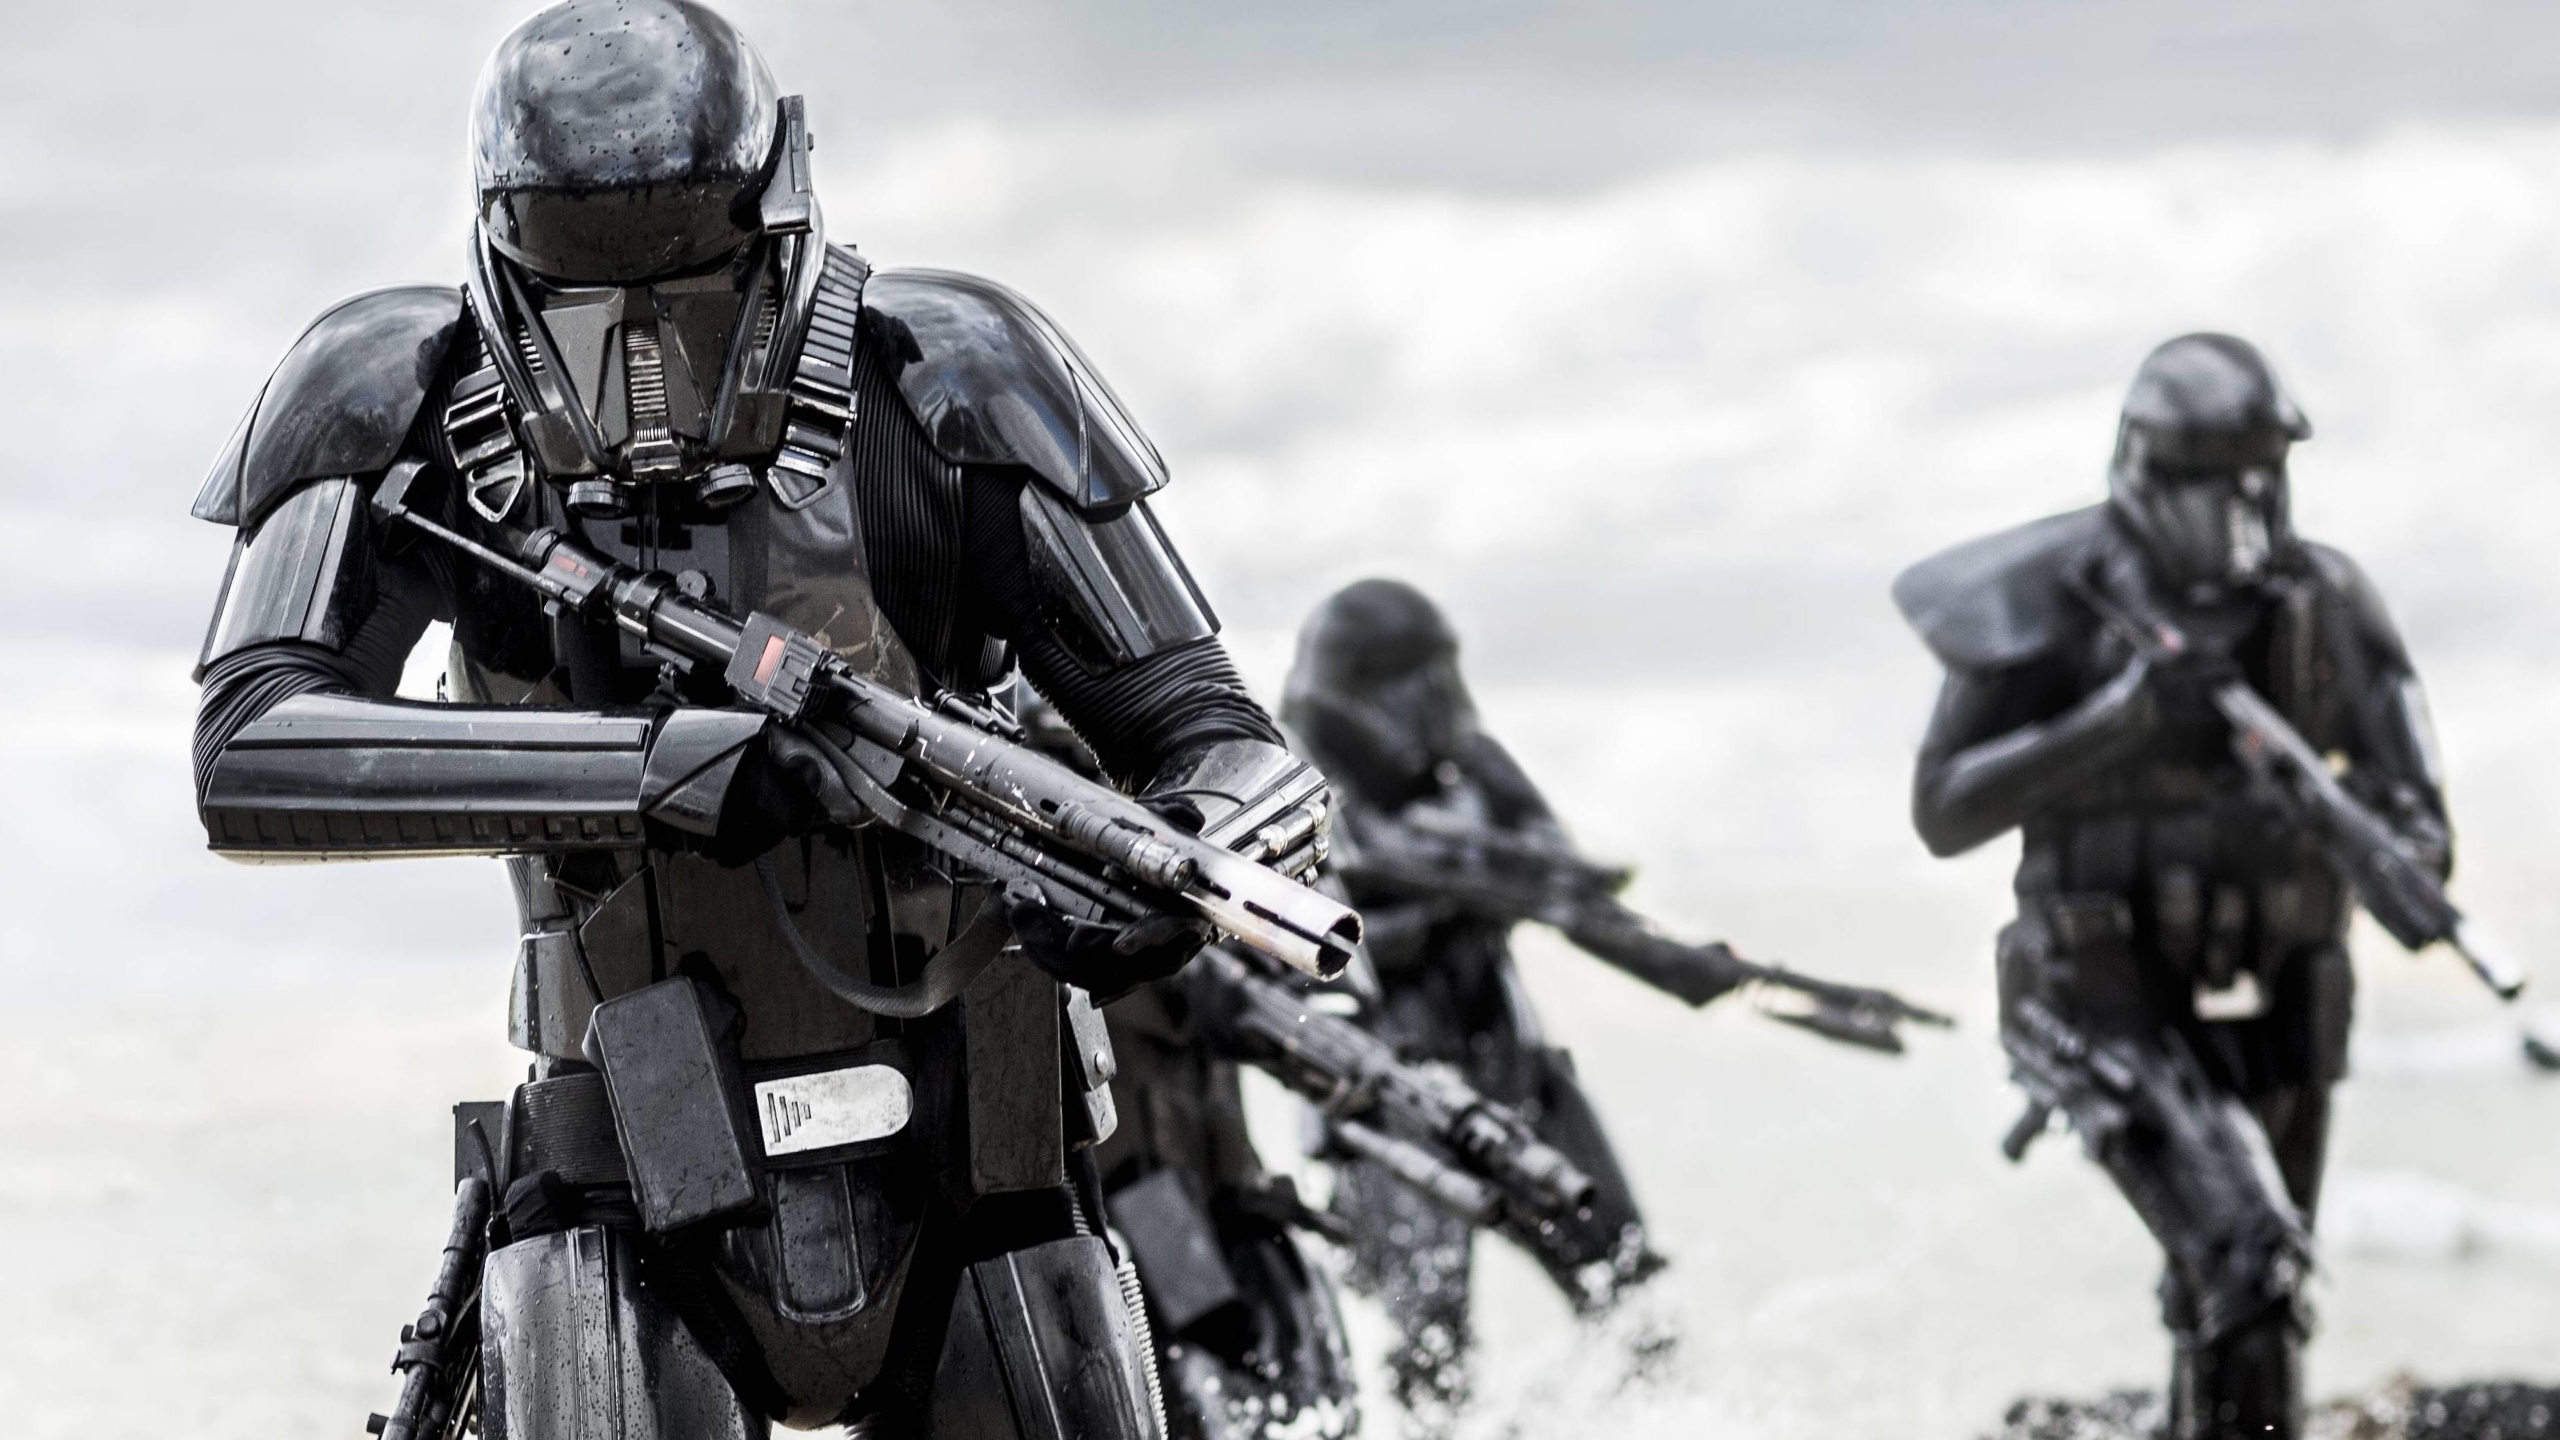 General 2560x1440 Star Wars Death Troopers black armor digital art